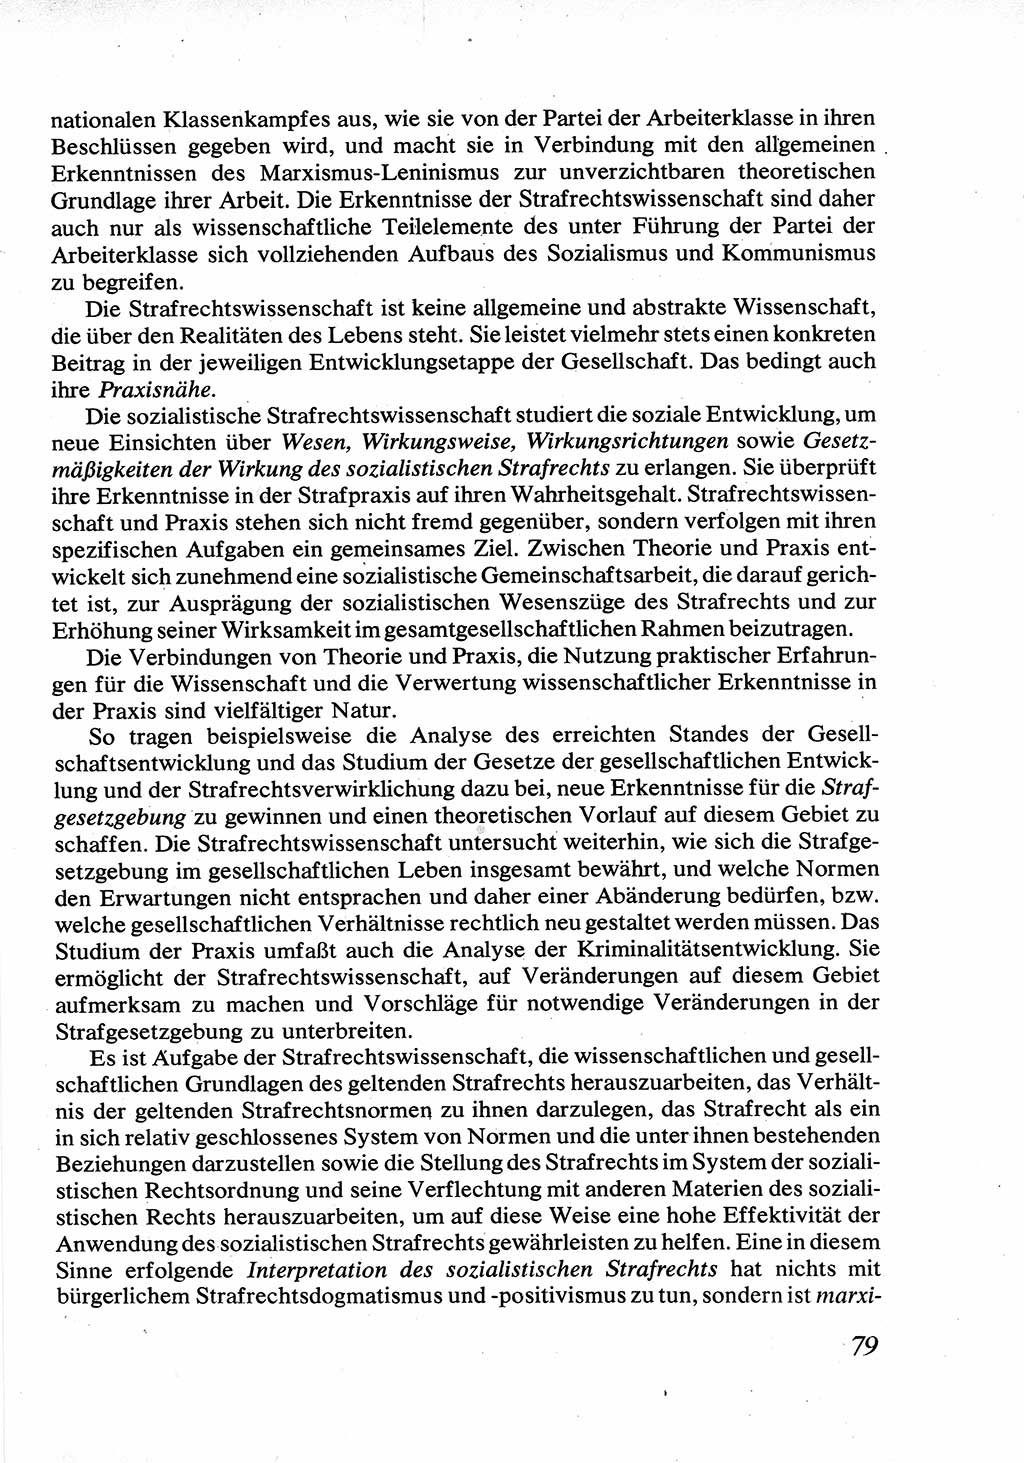 Strafrecht [Deutsche Demokratische Republik (DDR)], Allgemeiner Teil, Lehrbuch 1976, Seite 79 (Strafr. DDR AT Lb. 1976, S. 79)